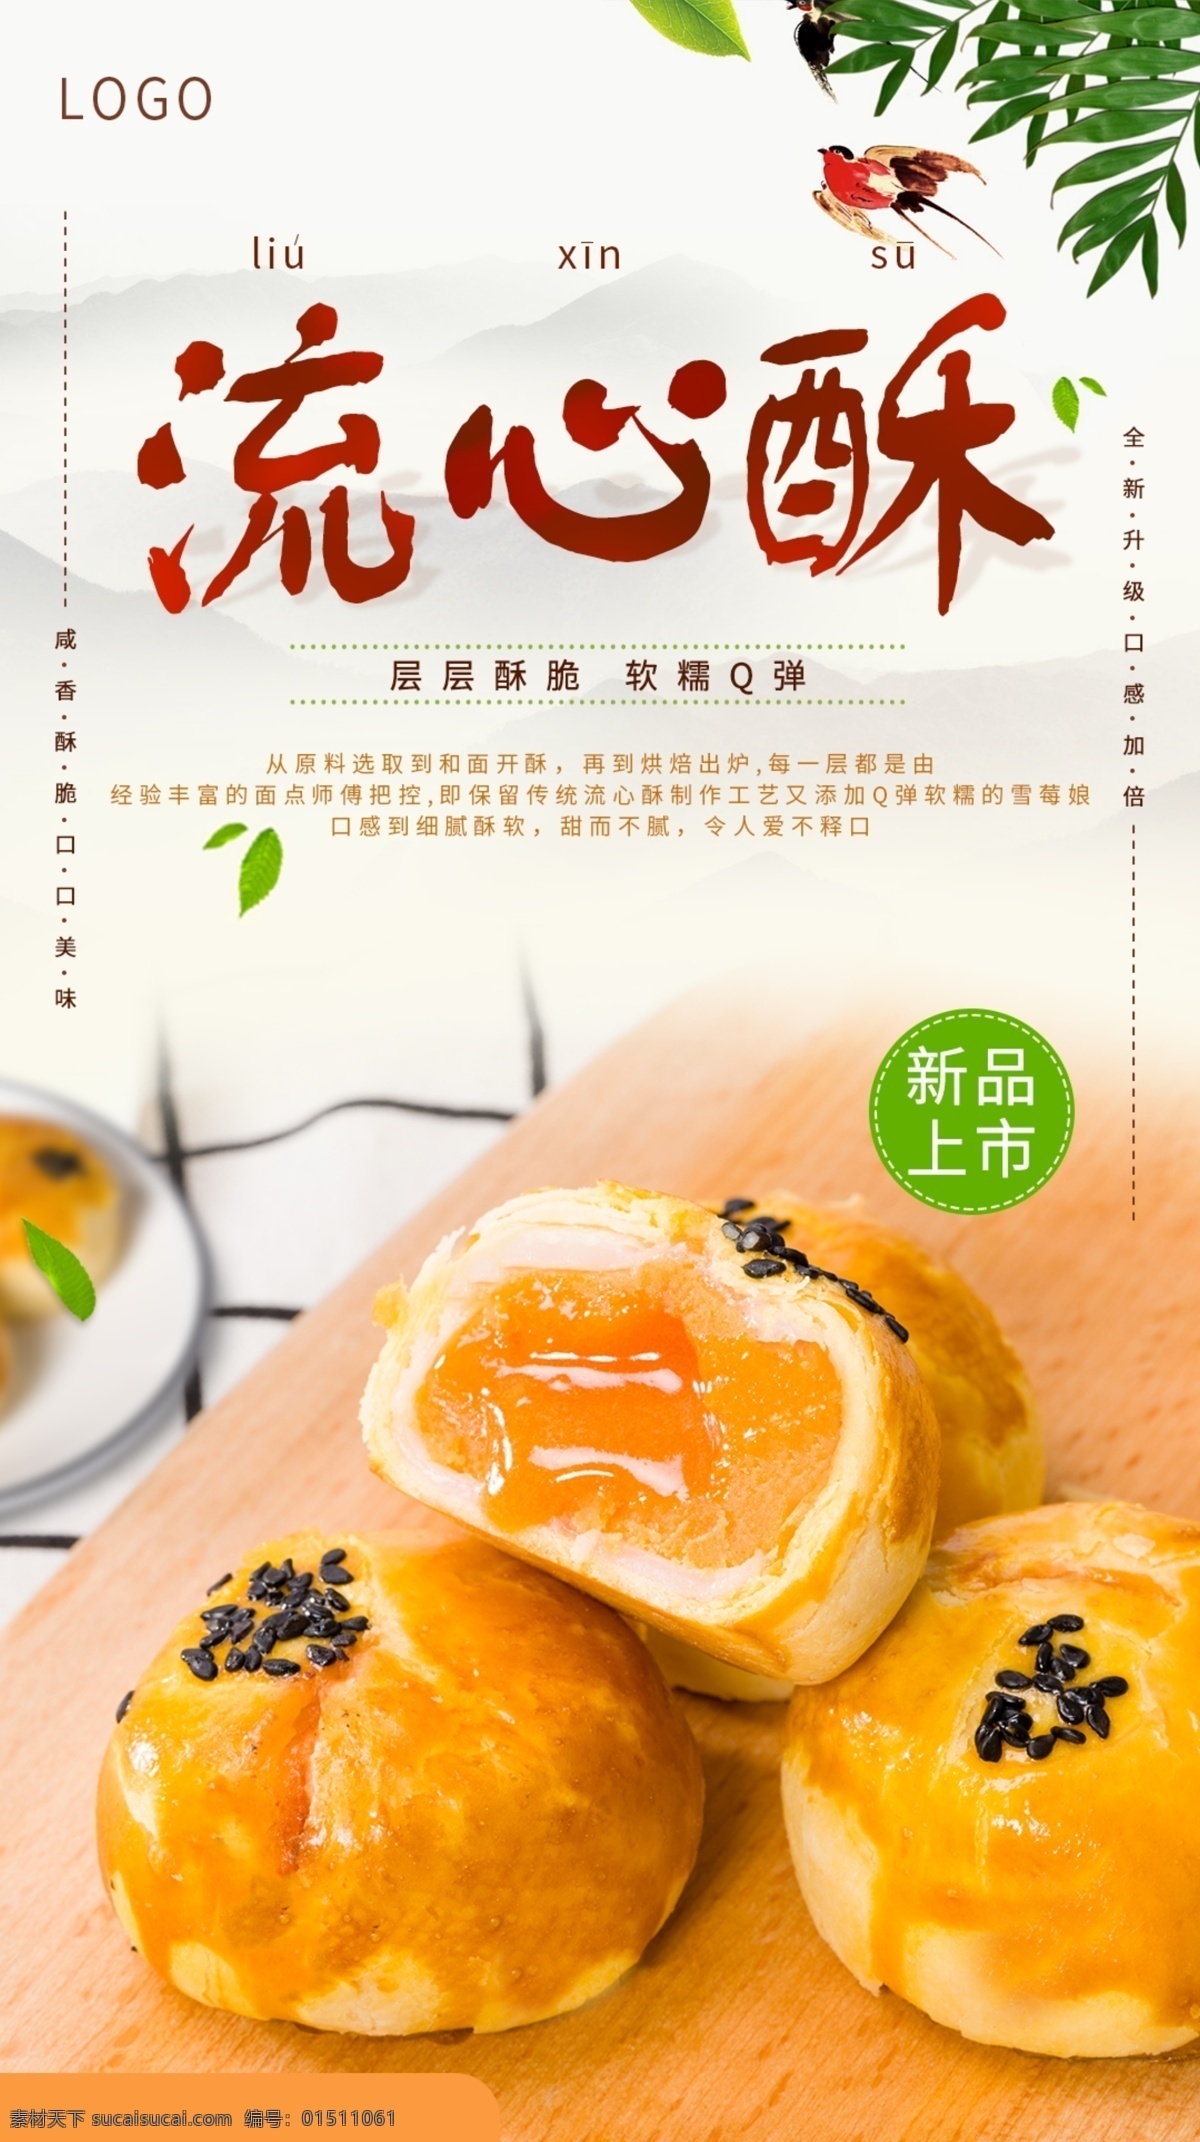 中华 传统 美食 糕点 蛋黄 酥 促销 海报 模板 蛋黄酥